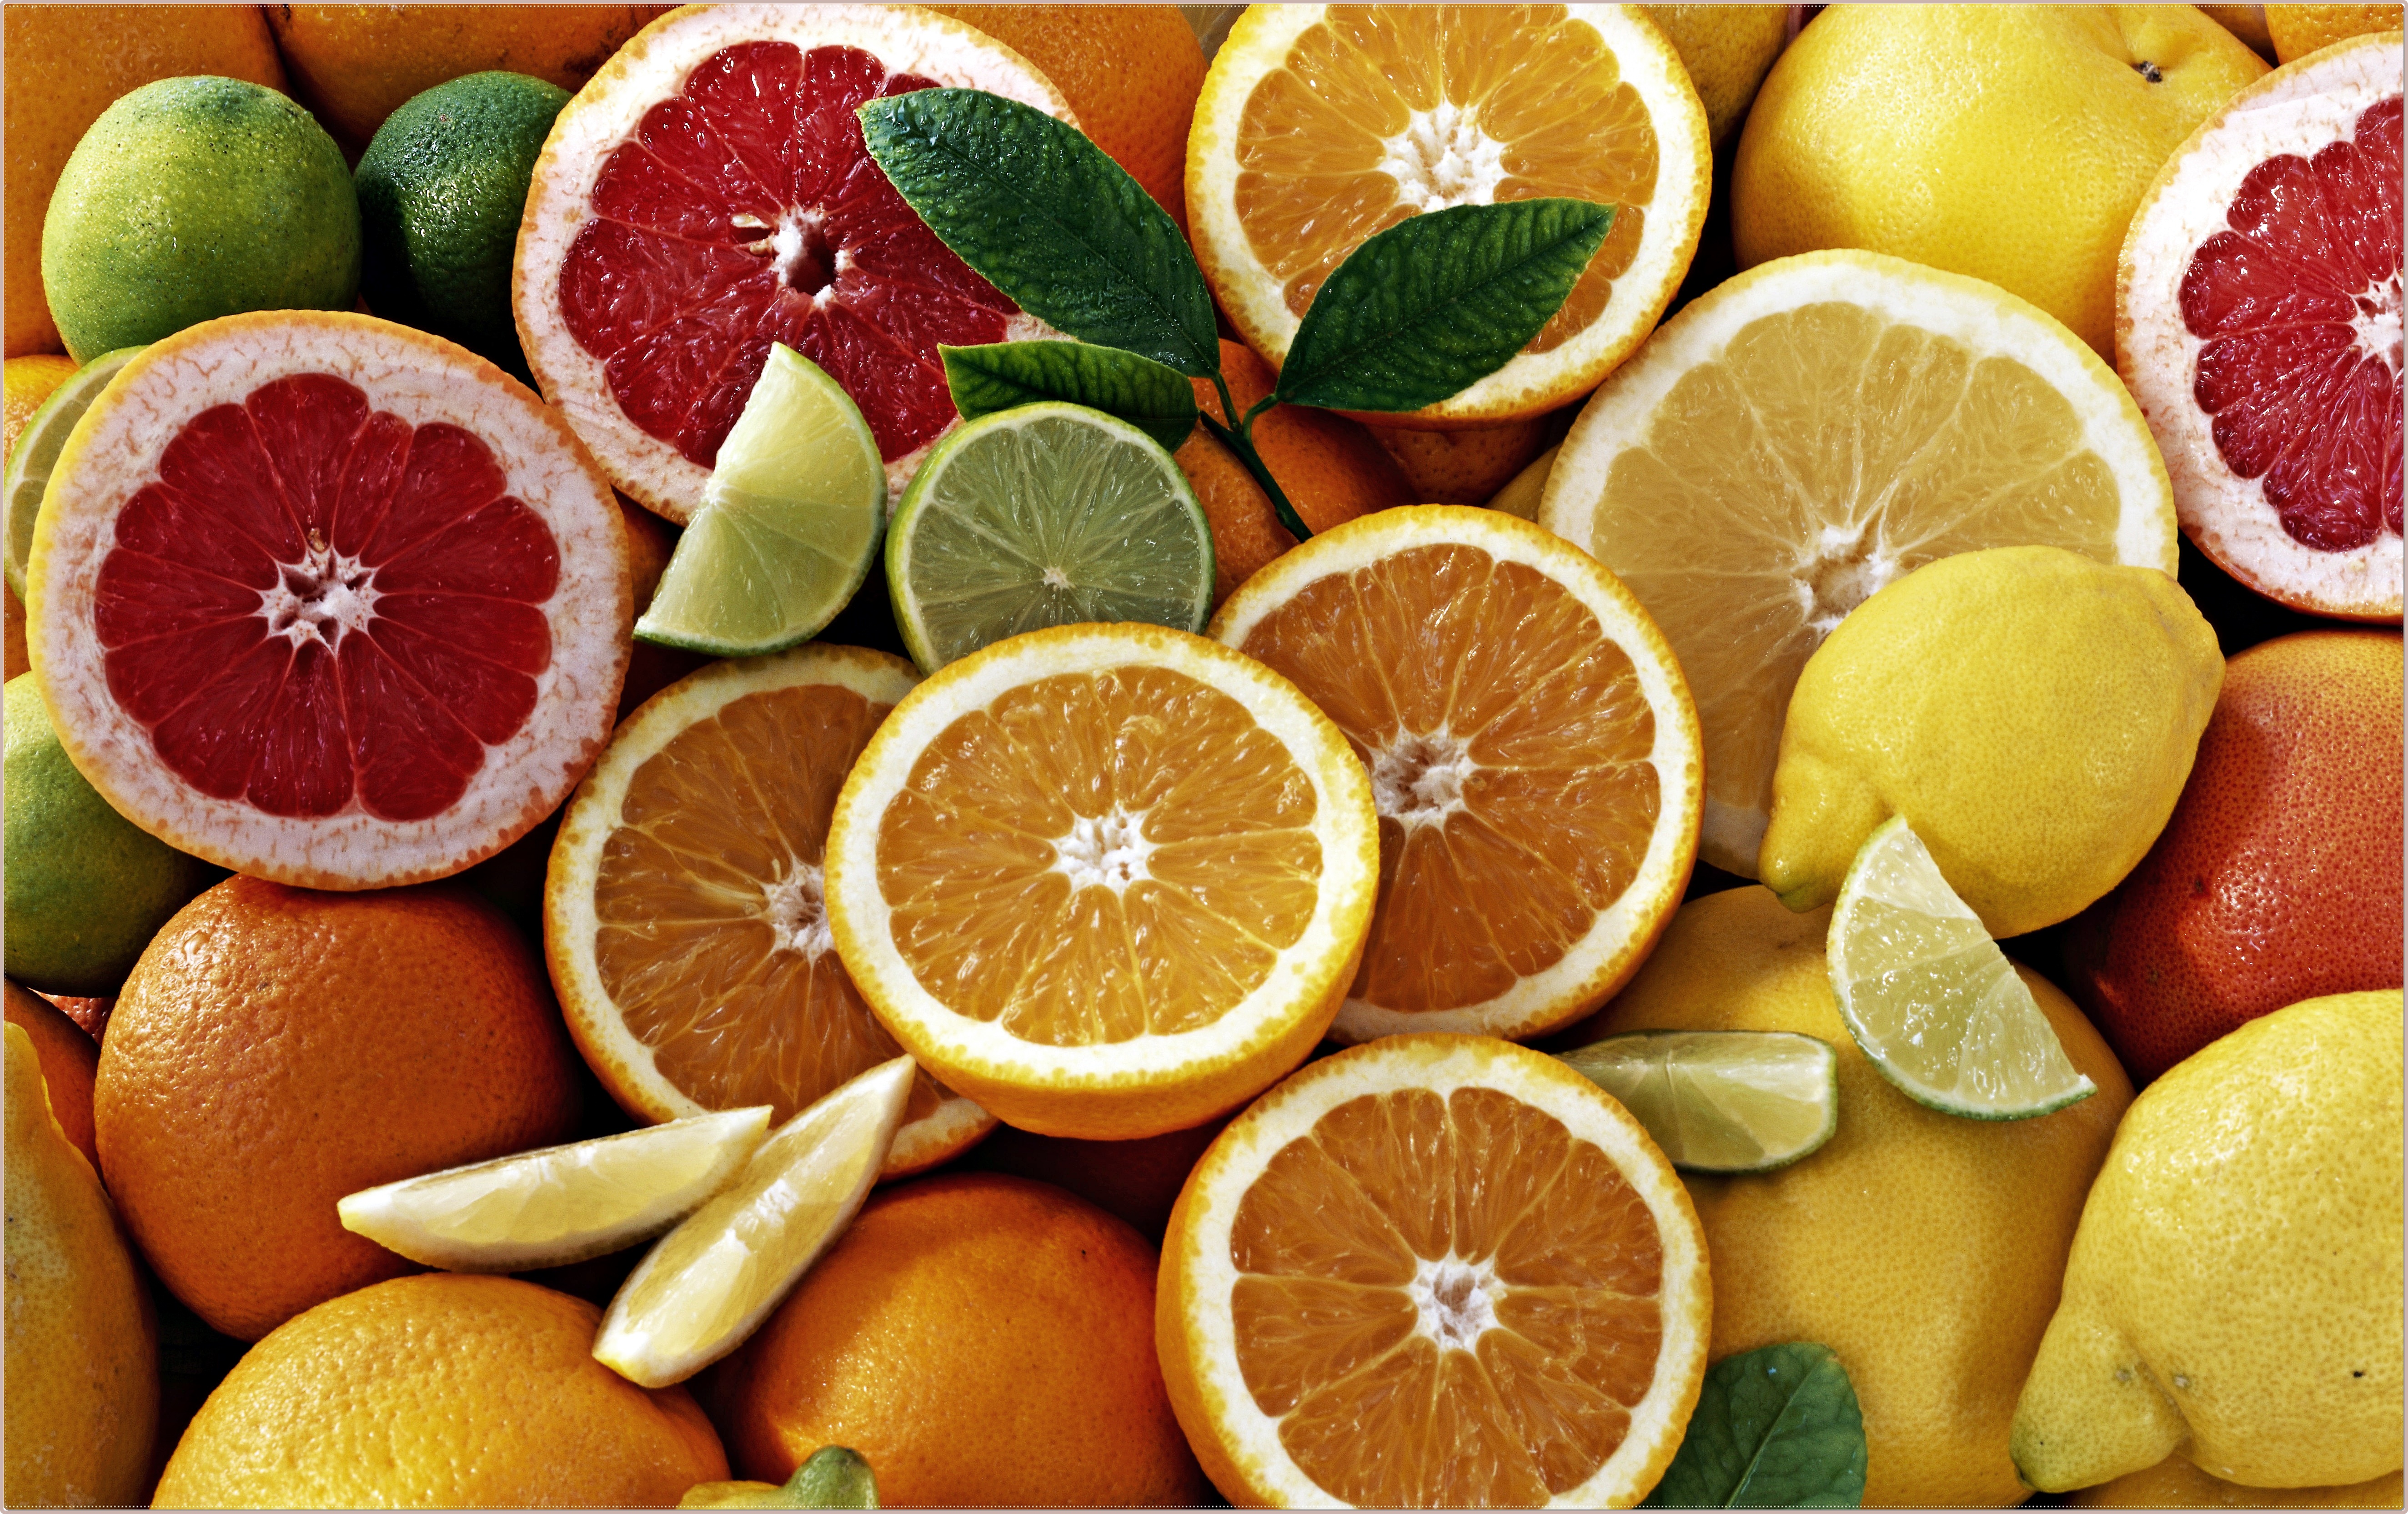 비타민C 듬뿍 들어가 있는 음식 종류 살펴보기